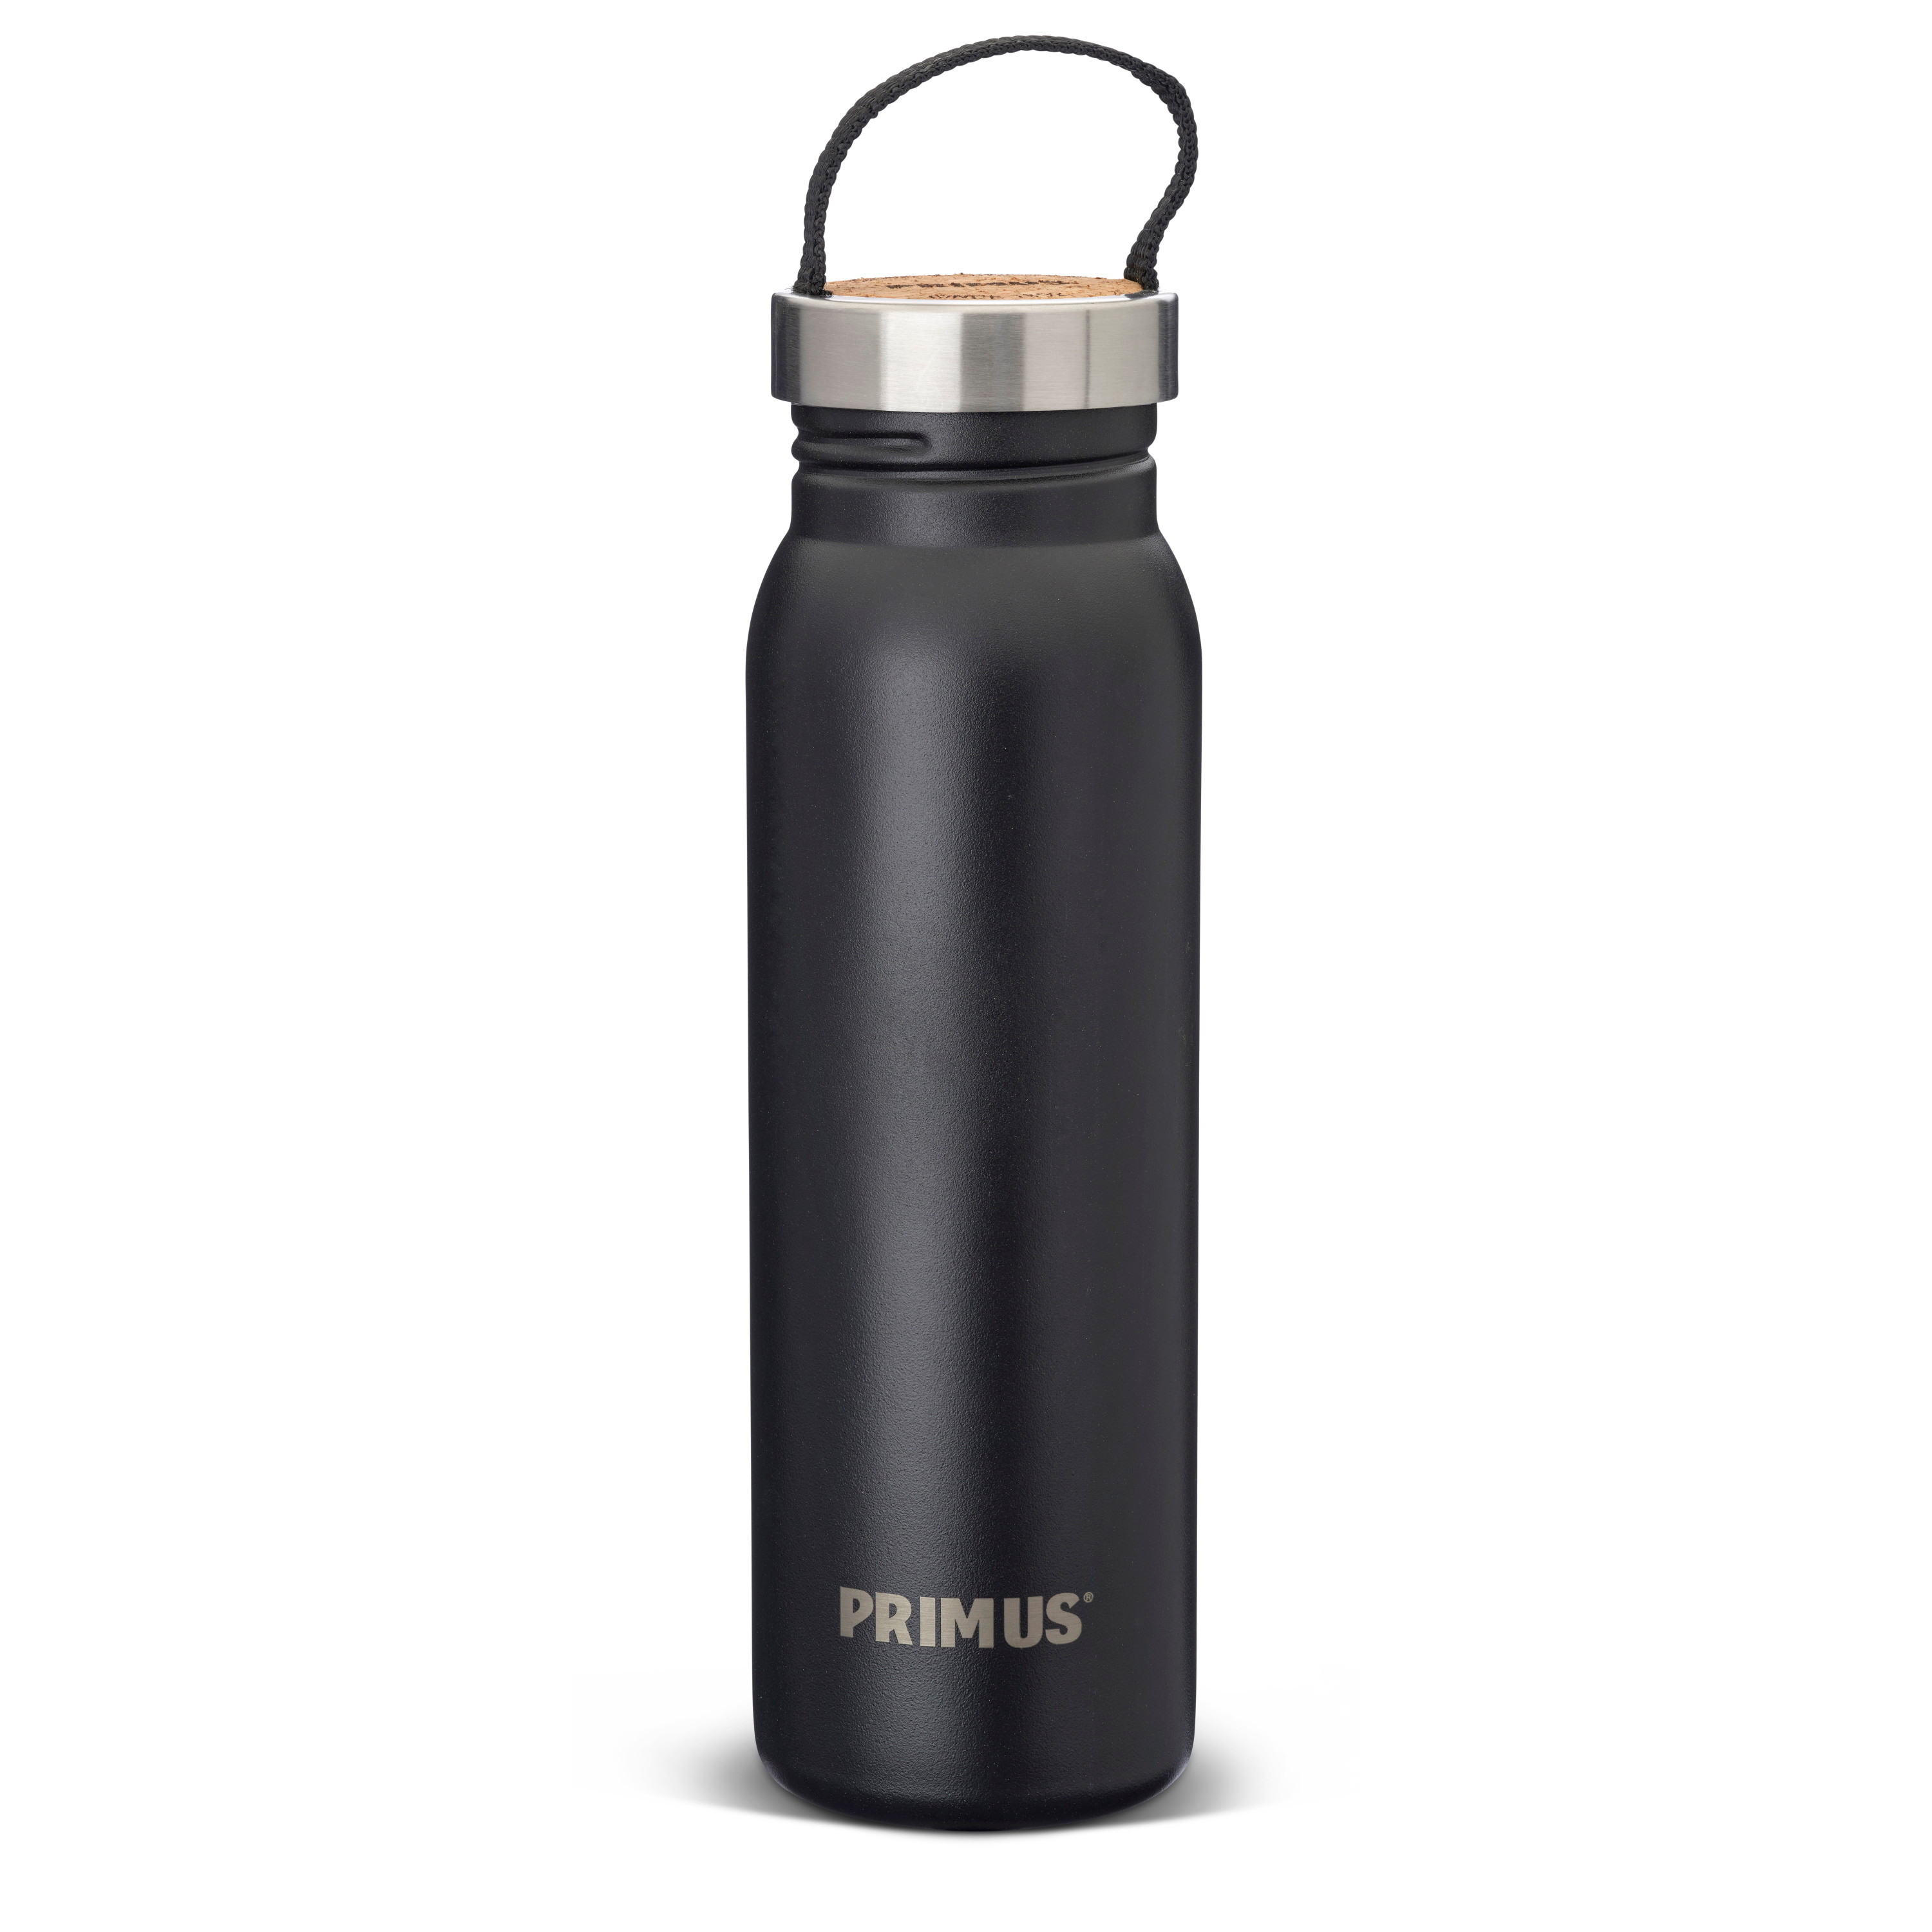 Primus Klunken Bottle 0.7 L Black